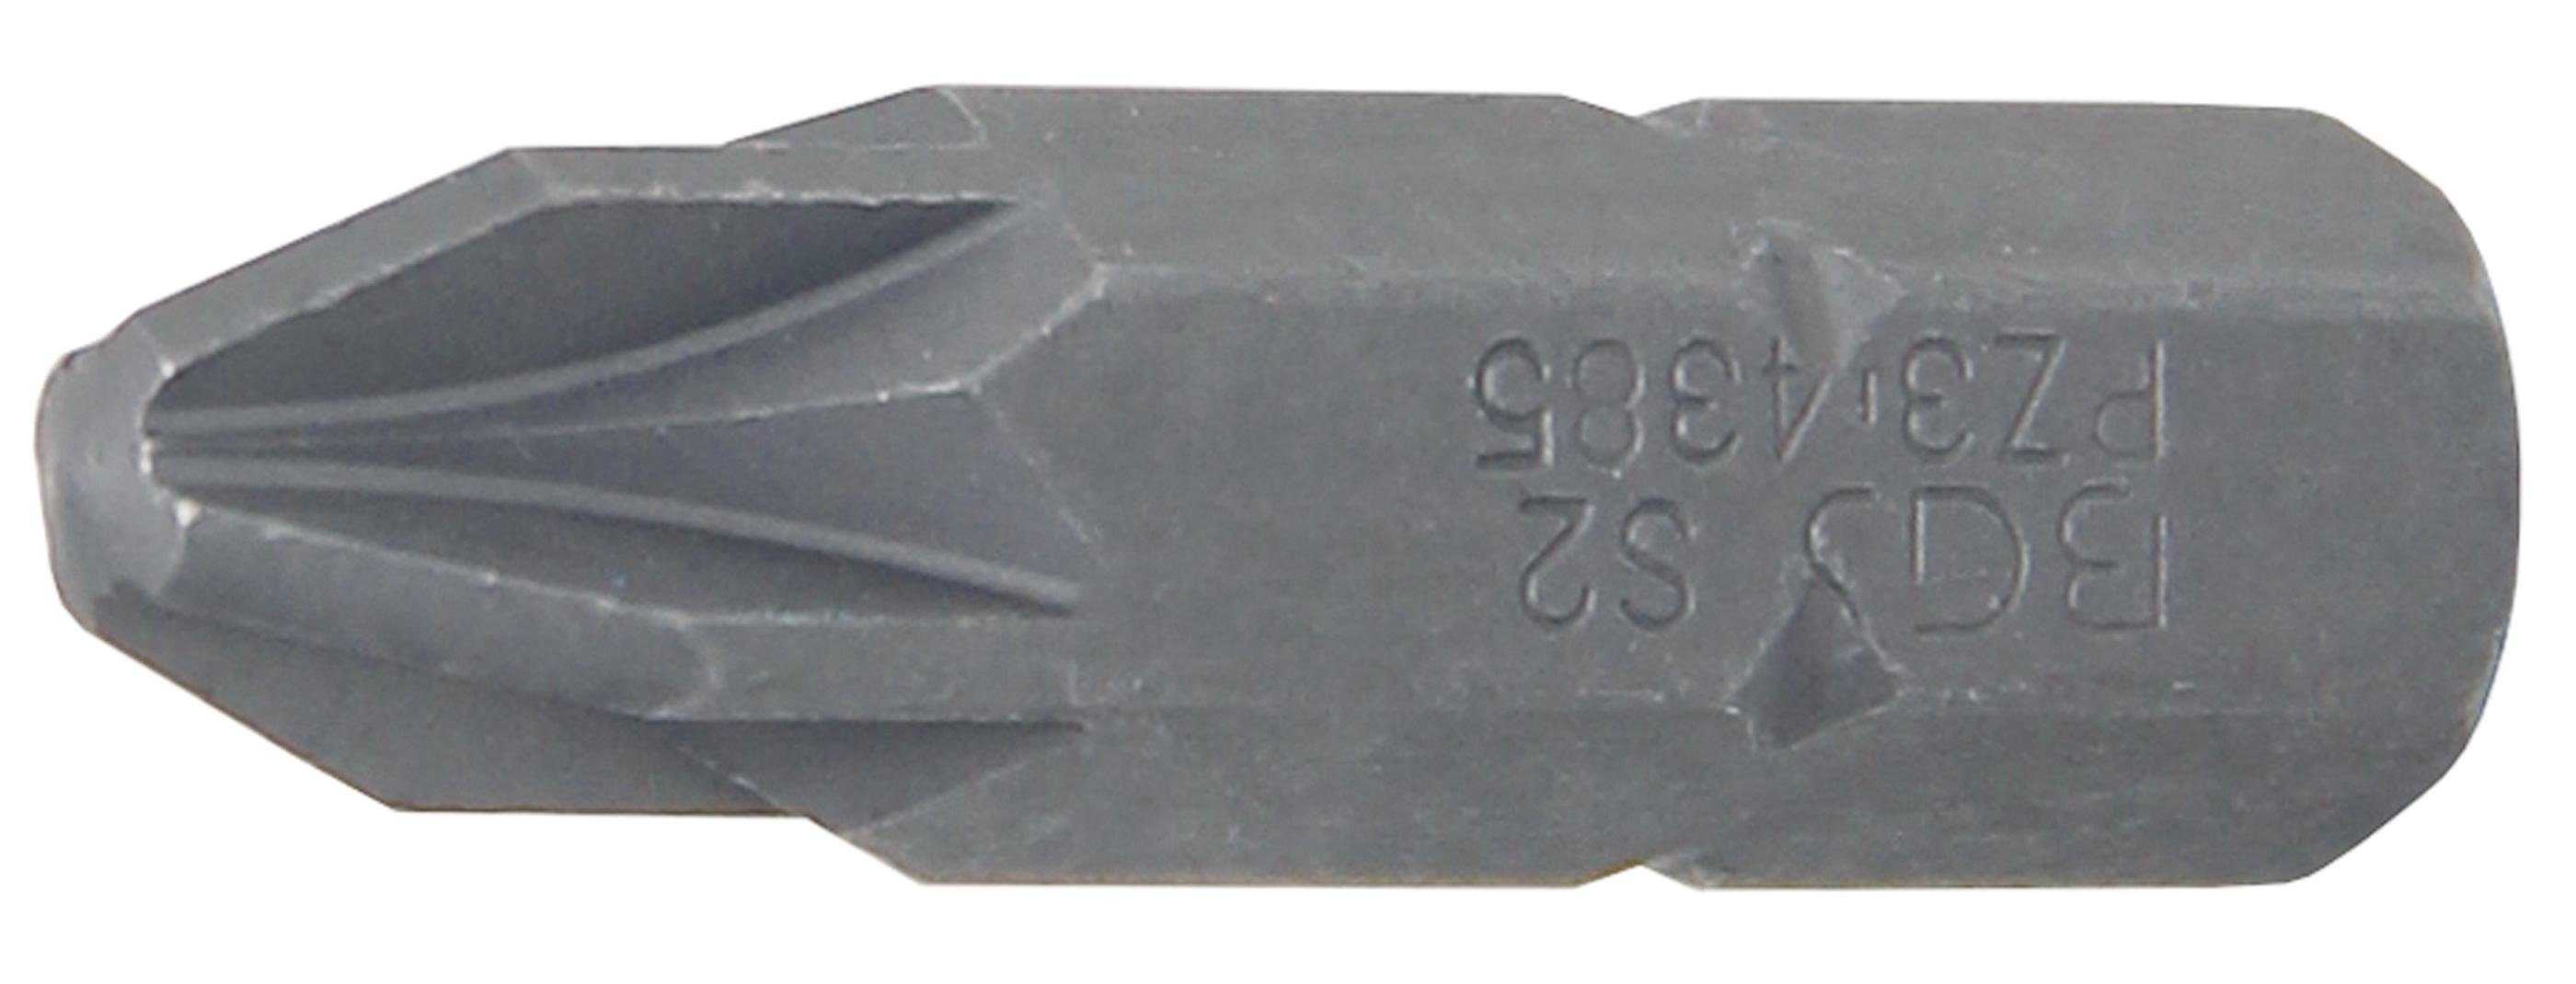 PZ3 mm Bit-Schraubendreher Antrieb 8 BGS Bit, (5/16), Außensechskant Kreuzschlitz technic